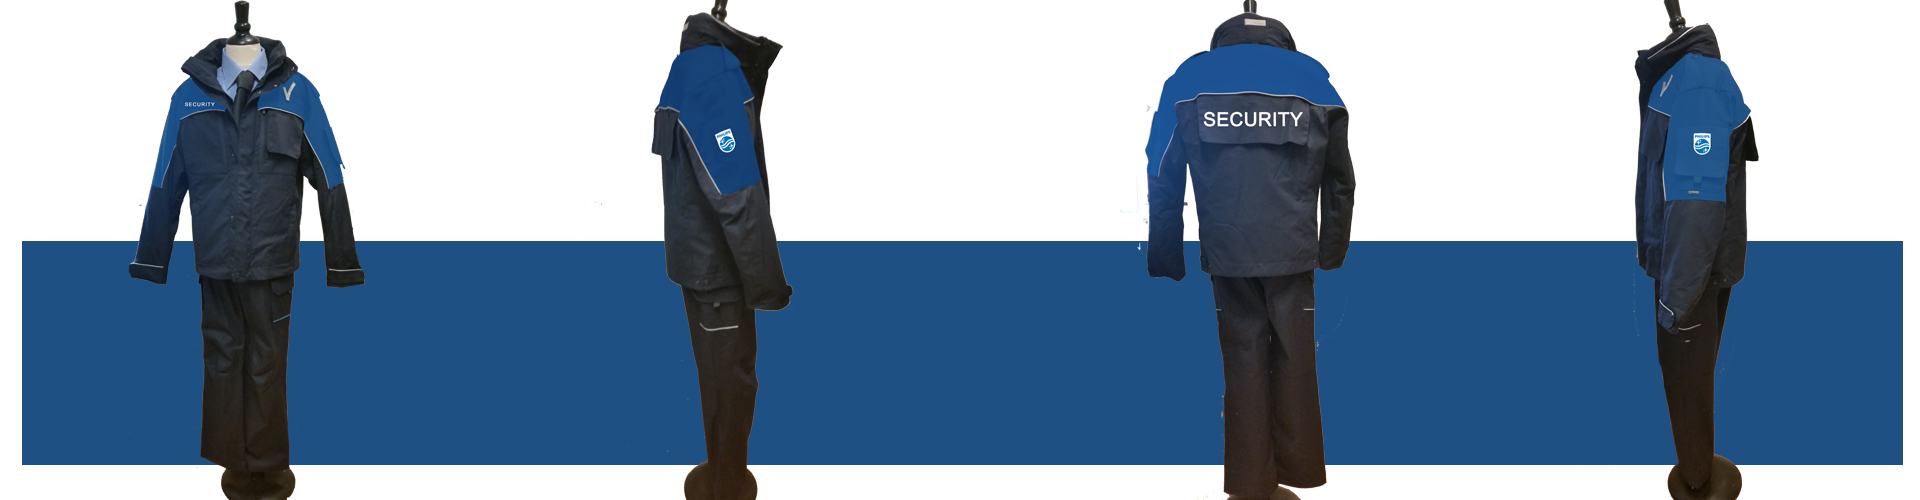 Philips beveiligingskleding door TMC bedrijfskleding Goretex jassen in bedrijfskleuren